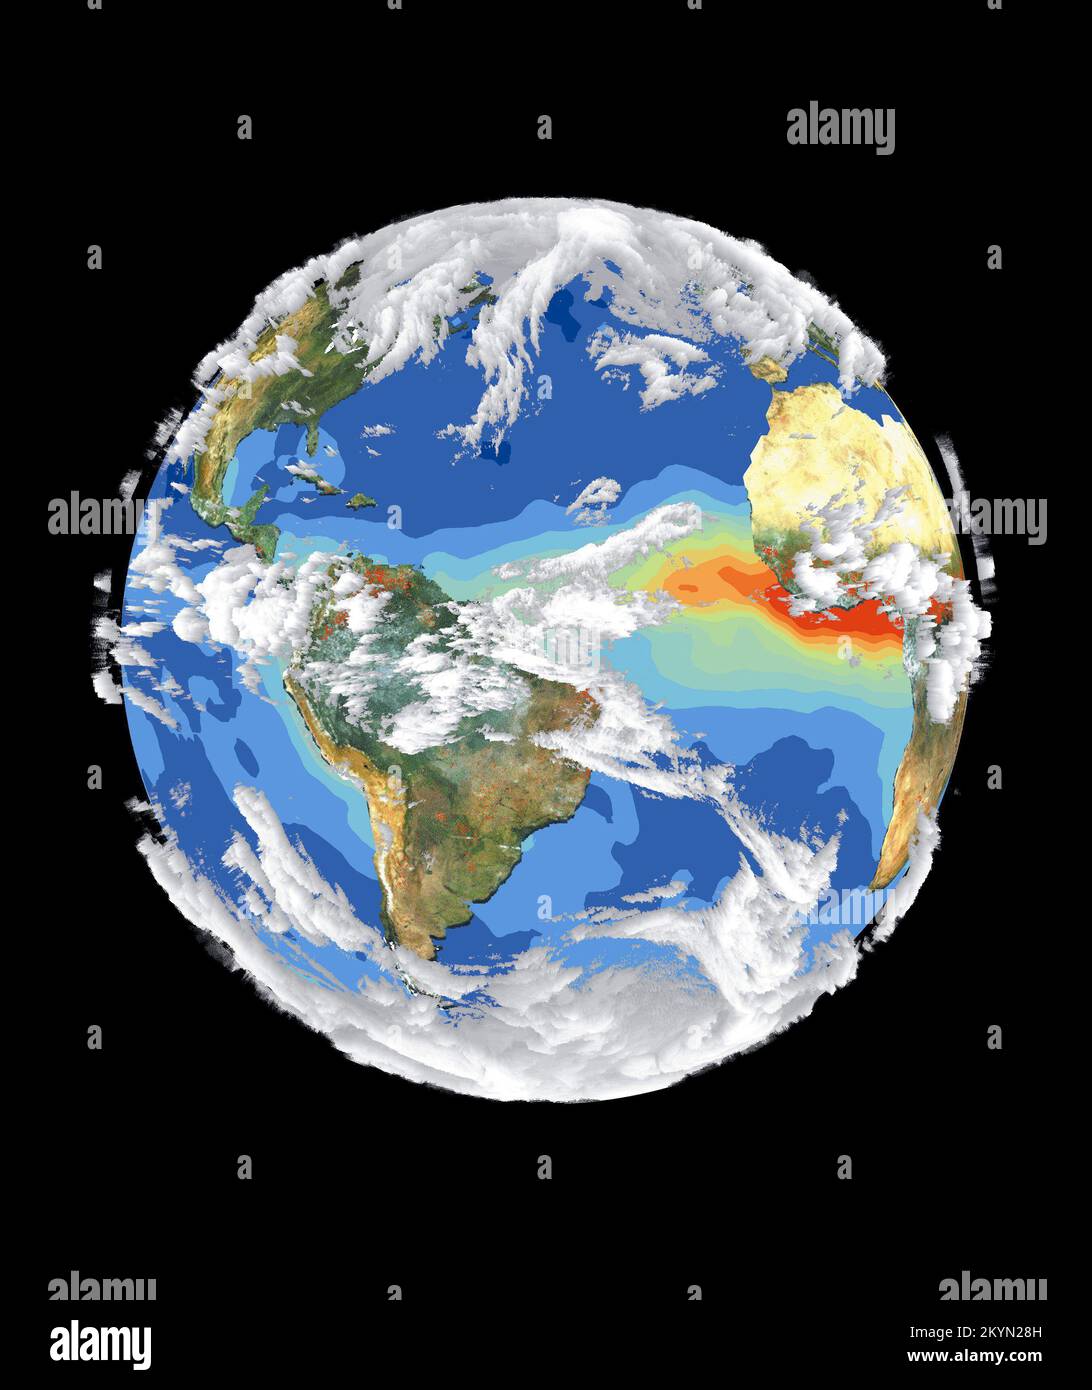 Données et d'images satellite tels que ceux présentés dans cette image de terre donner aux scientifiques une vue plus globale de l'systèmes interreliés et le climat. Quatre satellites différents contribuent à la réalisation de cette image. Sea-viewing Wide Field-of-view Sensor (SeaWiFS) a fourni le terrain et couche d'image est un vrai couleur composée de terres pour la végétation et sans nuage conditions du 18 septembre au 3 octobre 1997. Chaque point rouge sur l'Amérique du Sud et l'Afrique représente un incendie détecté par le radiomètre de pointe à très haute résolution. La couche d'aérosol océanique est basée sur les océans et l' Banque D'Images